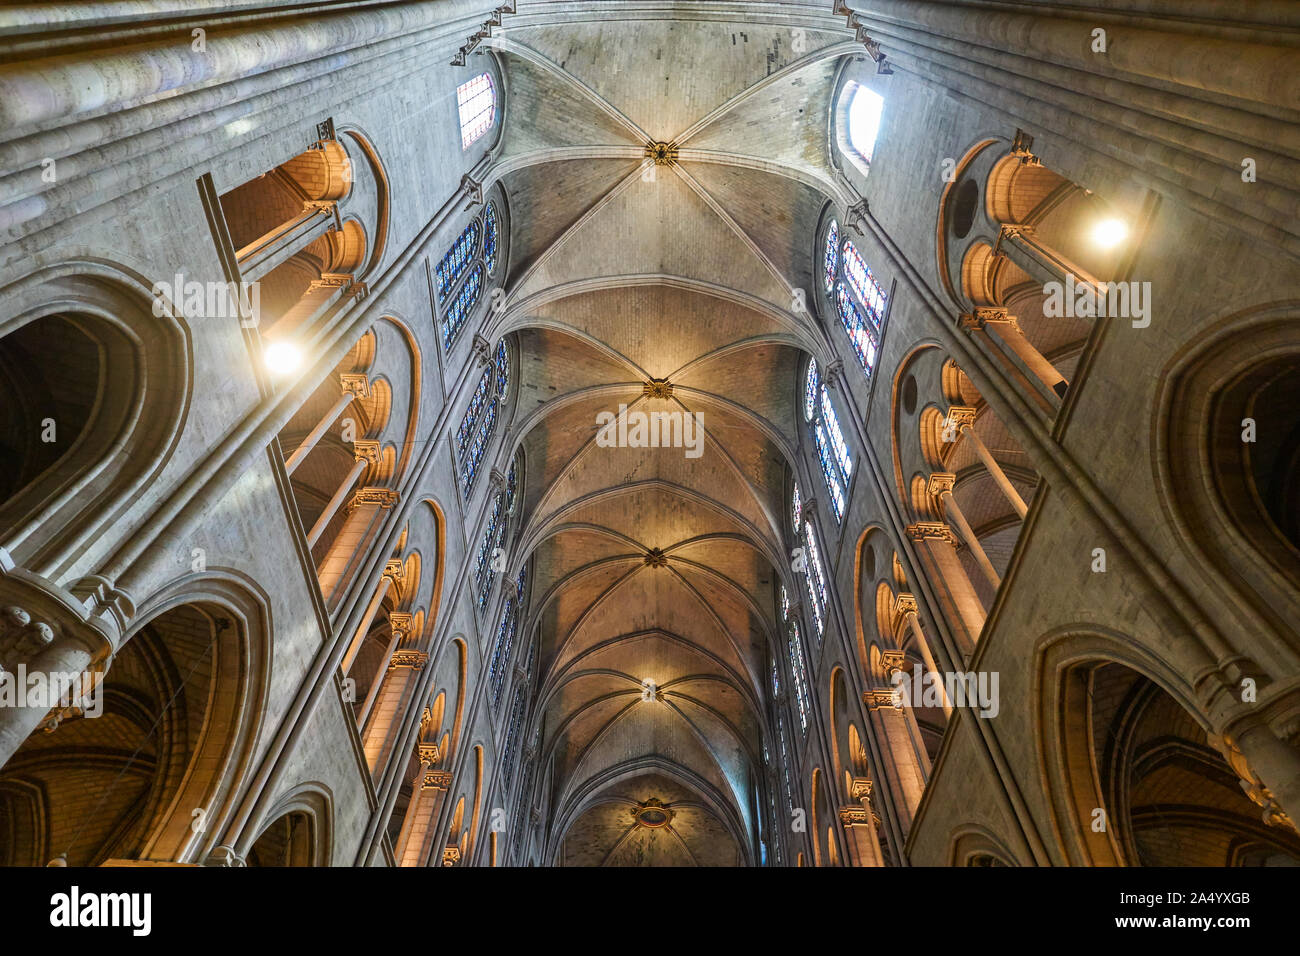 Interni e dettagli architettonici della cattedrale di Notre Dame di Parigi, Francia. 2 settembre 2017 Foto Stock